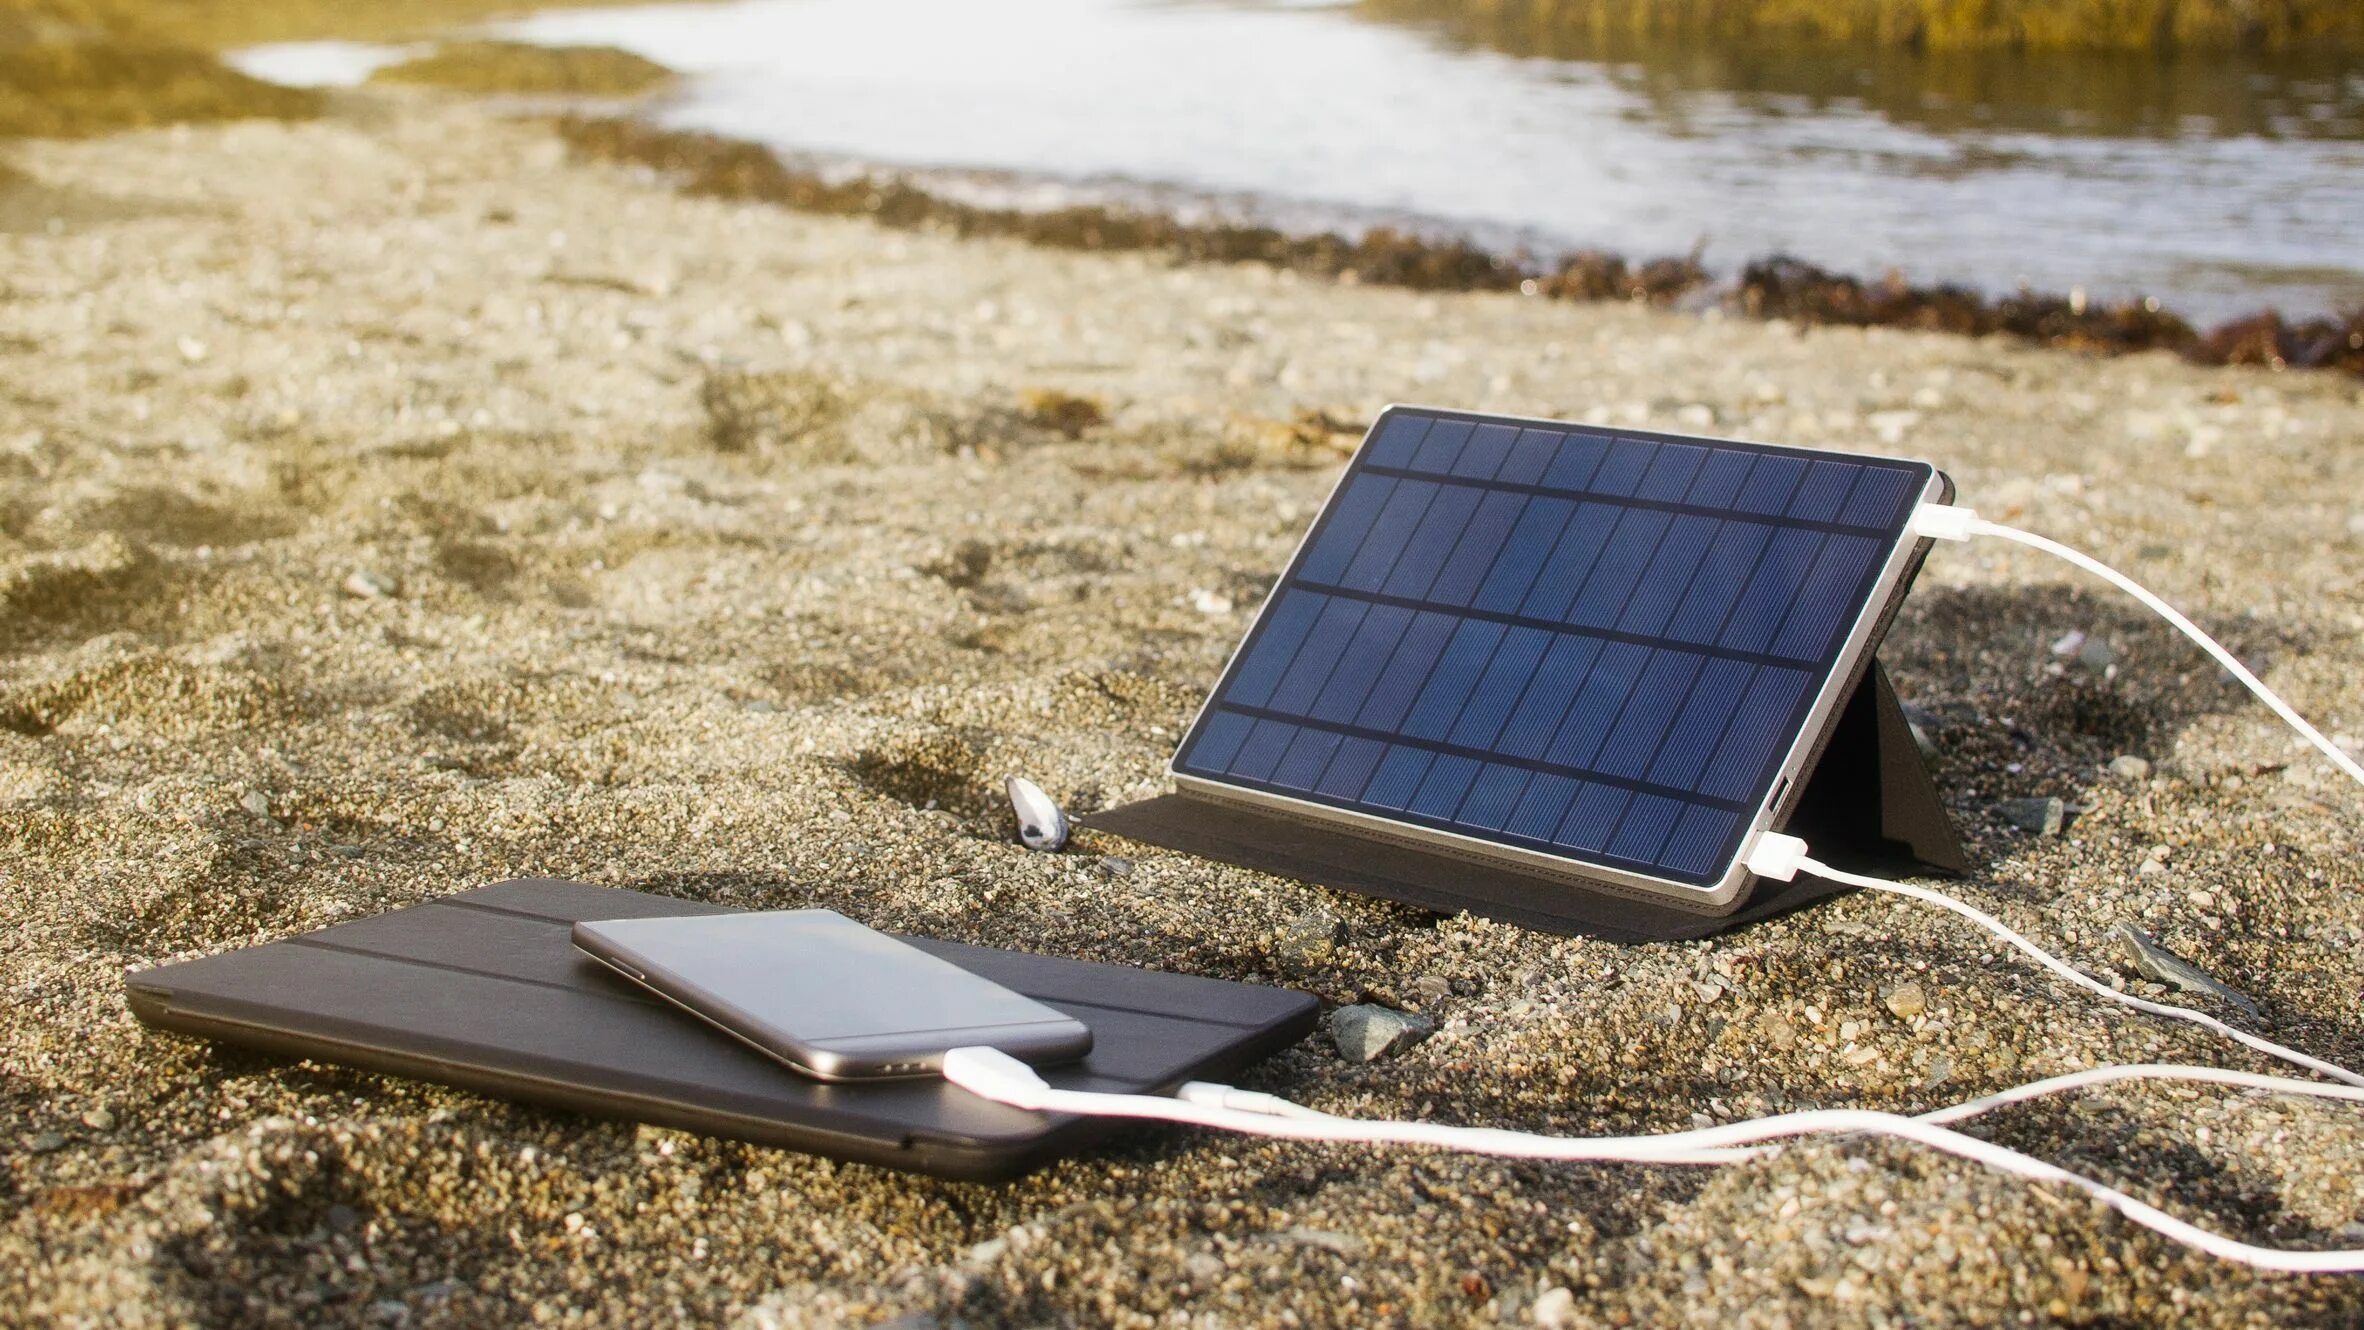 Солнечная батарея 3w портативная система. Solar Panel Солнечная панель портативная. Солнечная батарея 1050mm. Solar Camping HB-v80 c USB /солнеч.подзарядка.